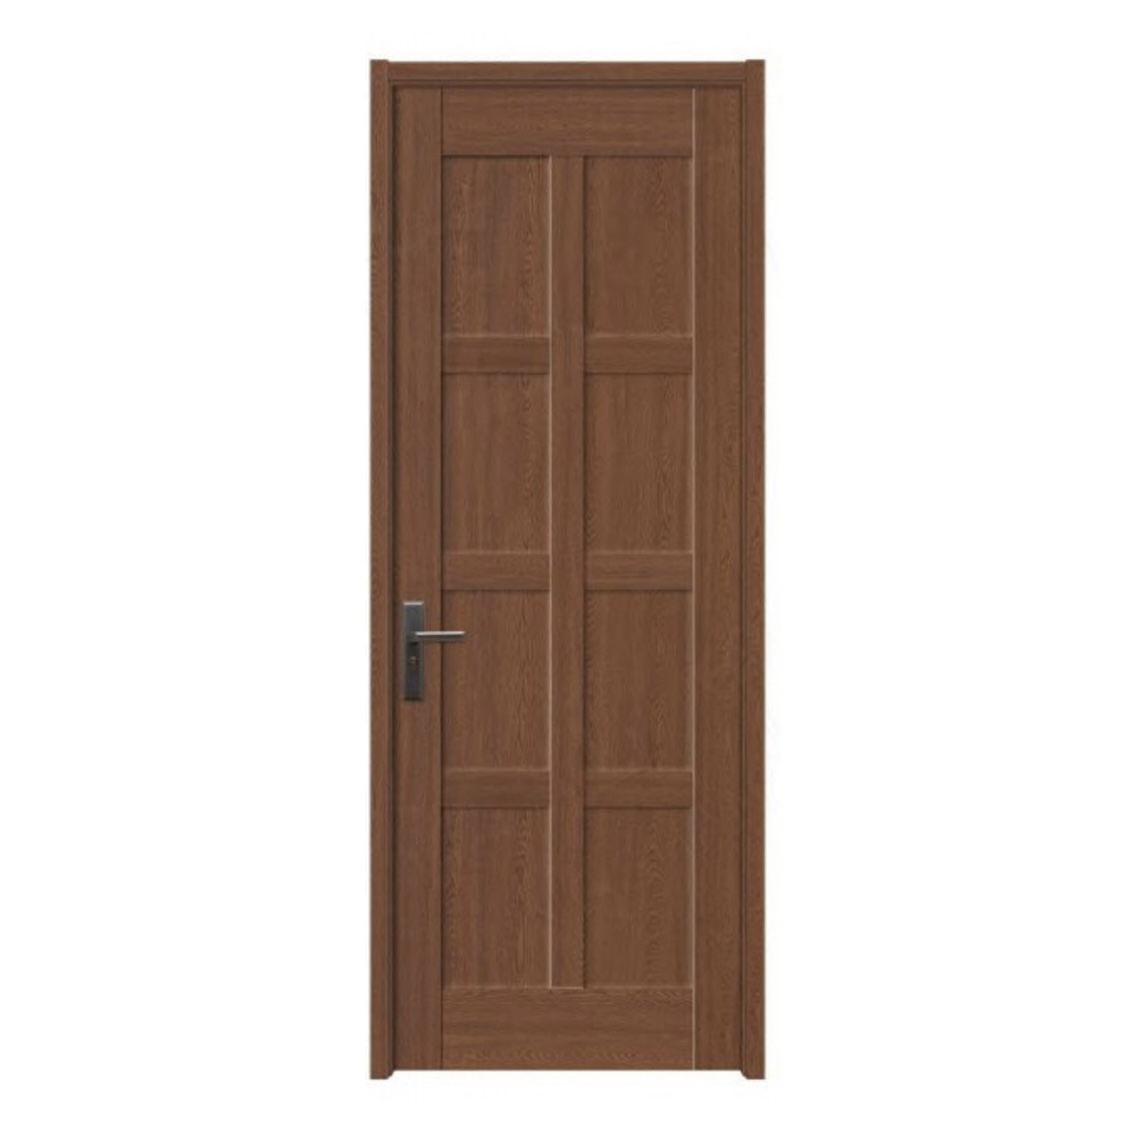 Hot Selling Composite Interior Room Wood MDF WPC Door Panel WPC Hollow Door Board 5